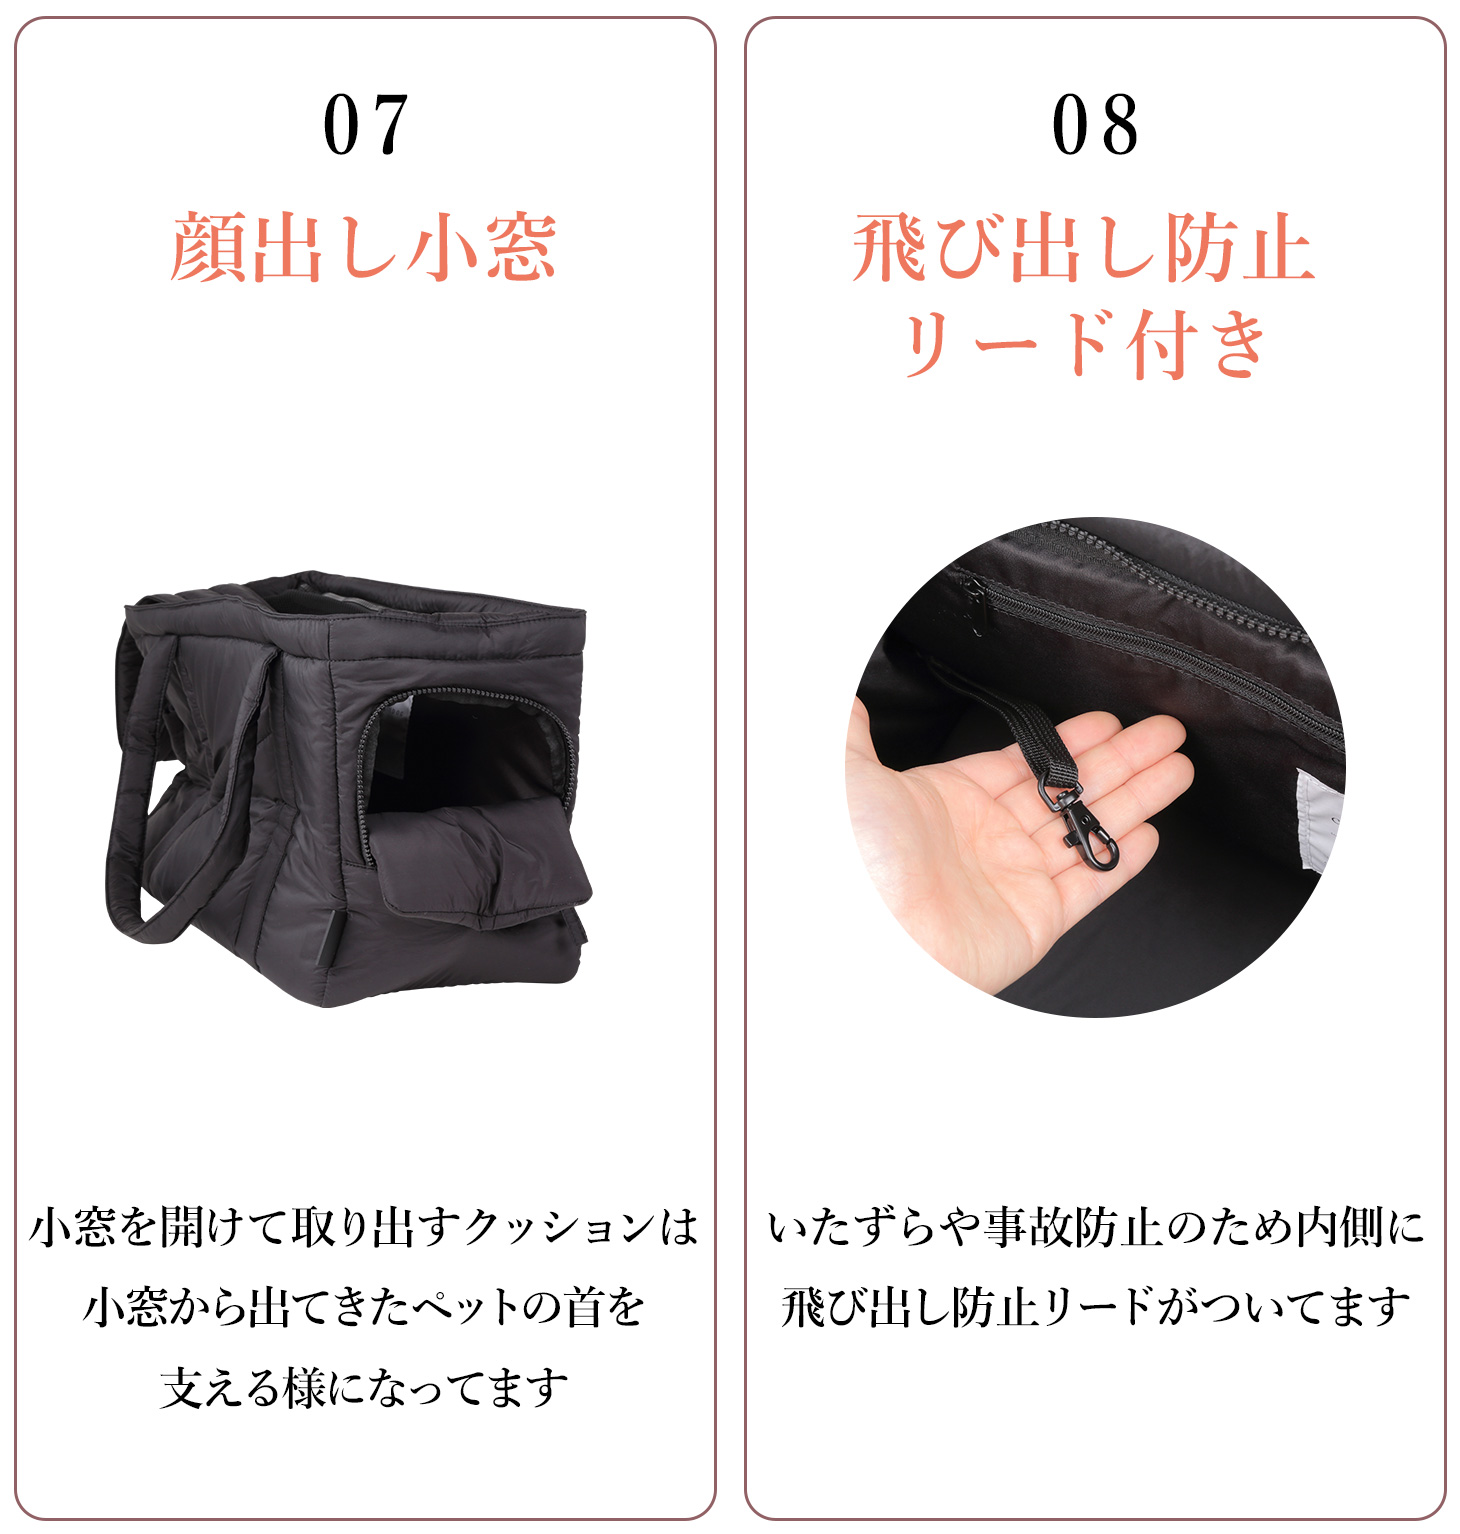 おもちクルト × CITYDOGコラボアイテム軽くて使いやすいキャリーバッグ 